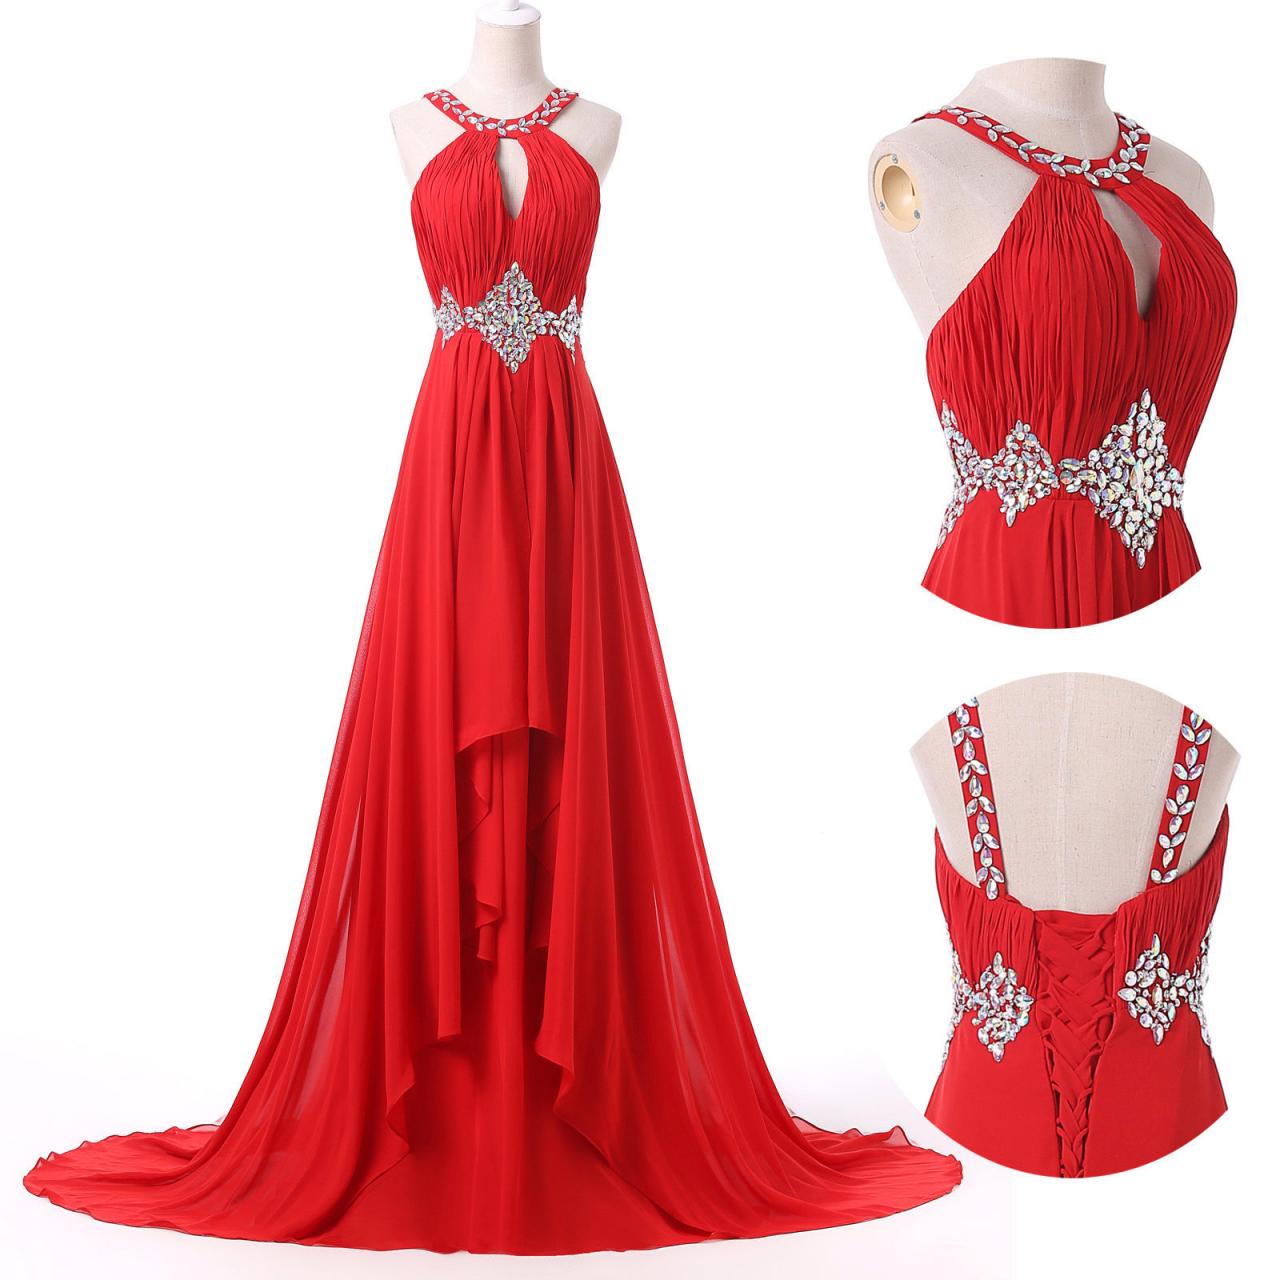 Prom Dresses,red Prom Dresses,chiffon Prom Dress,2016 Sexy Scoop Prom Dresses,long Elegant Prom Dresses,prom Dress